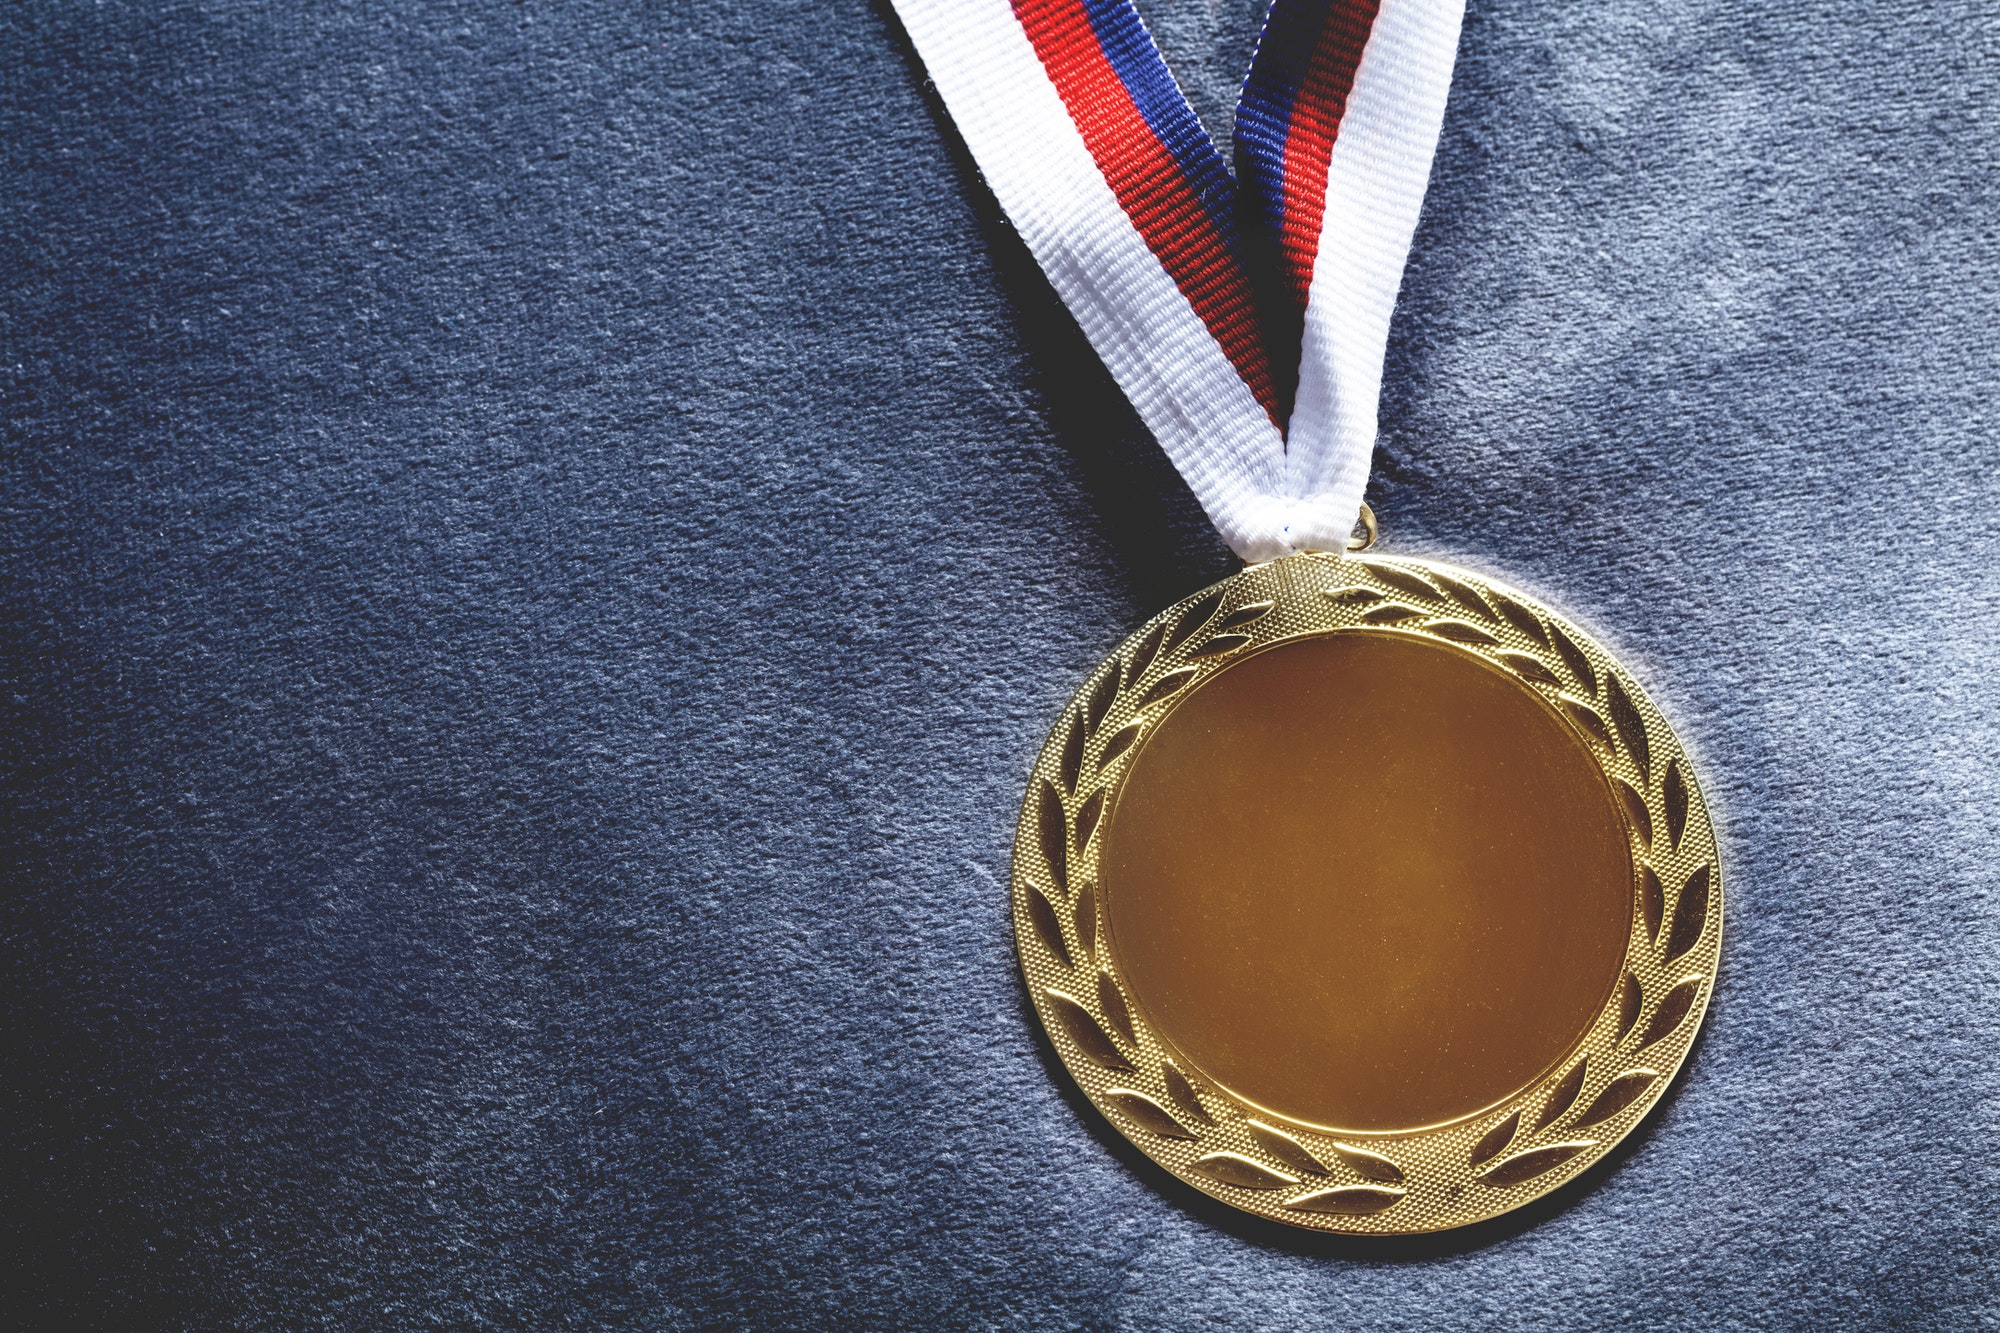 Medalla de oro sobre cojín de terciopelo. Juegos olímpicos